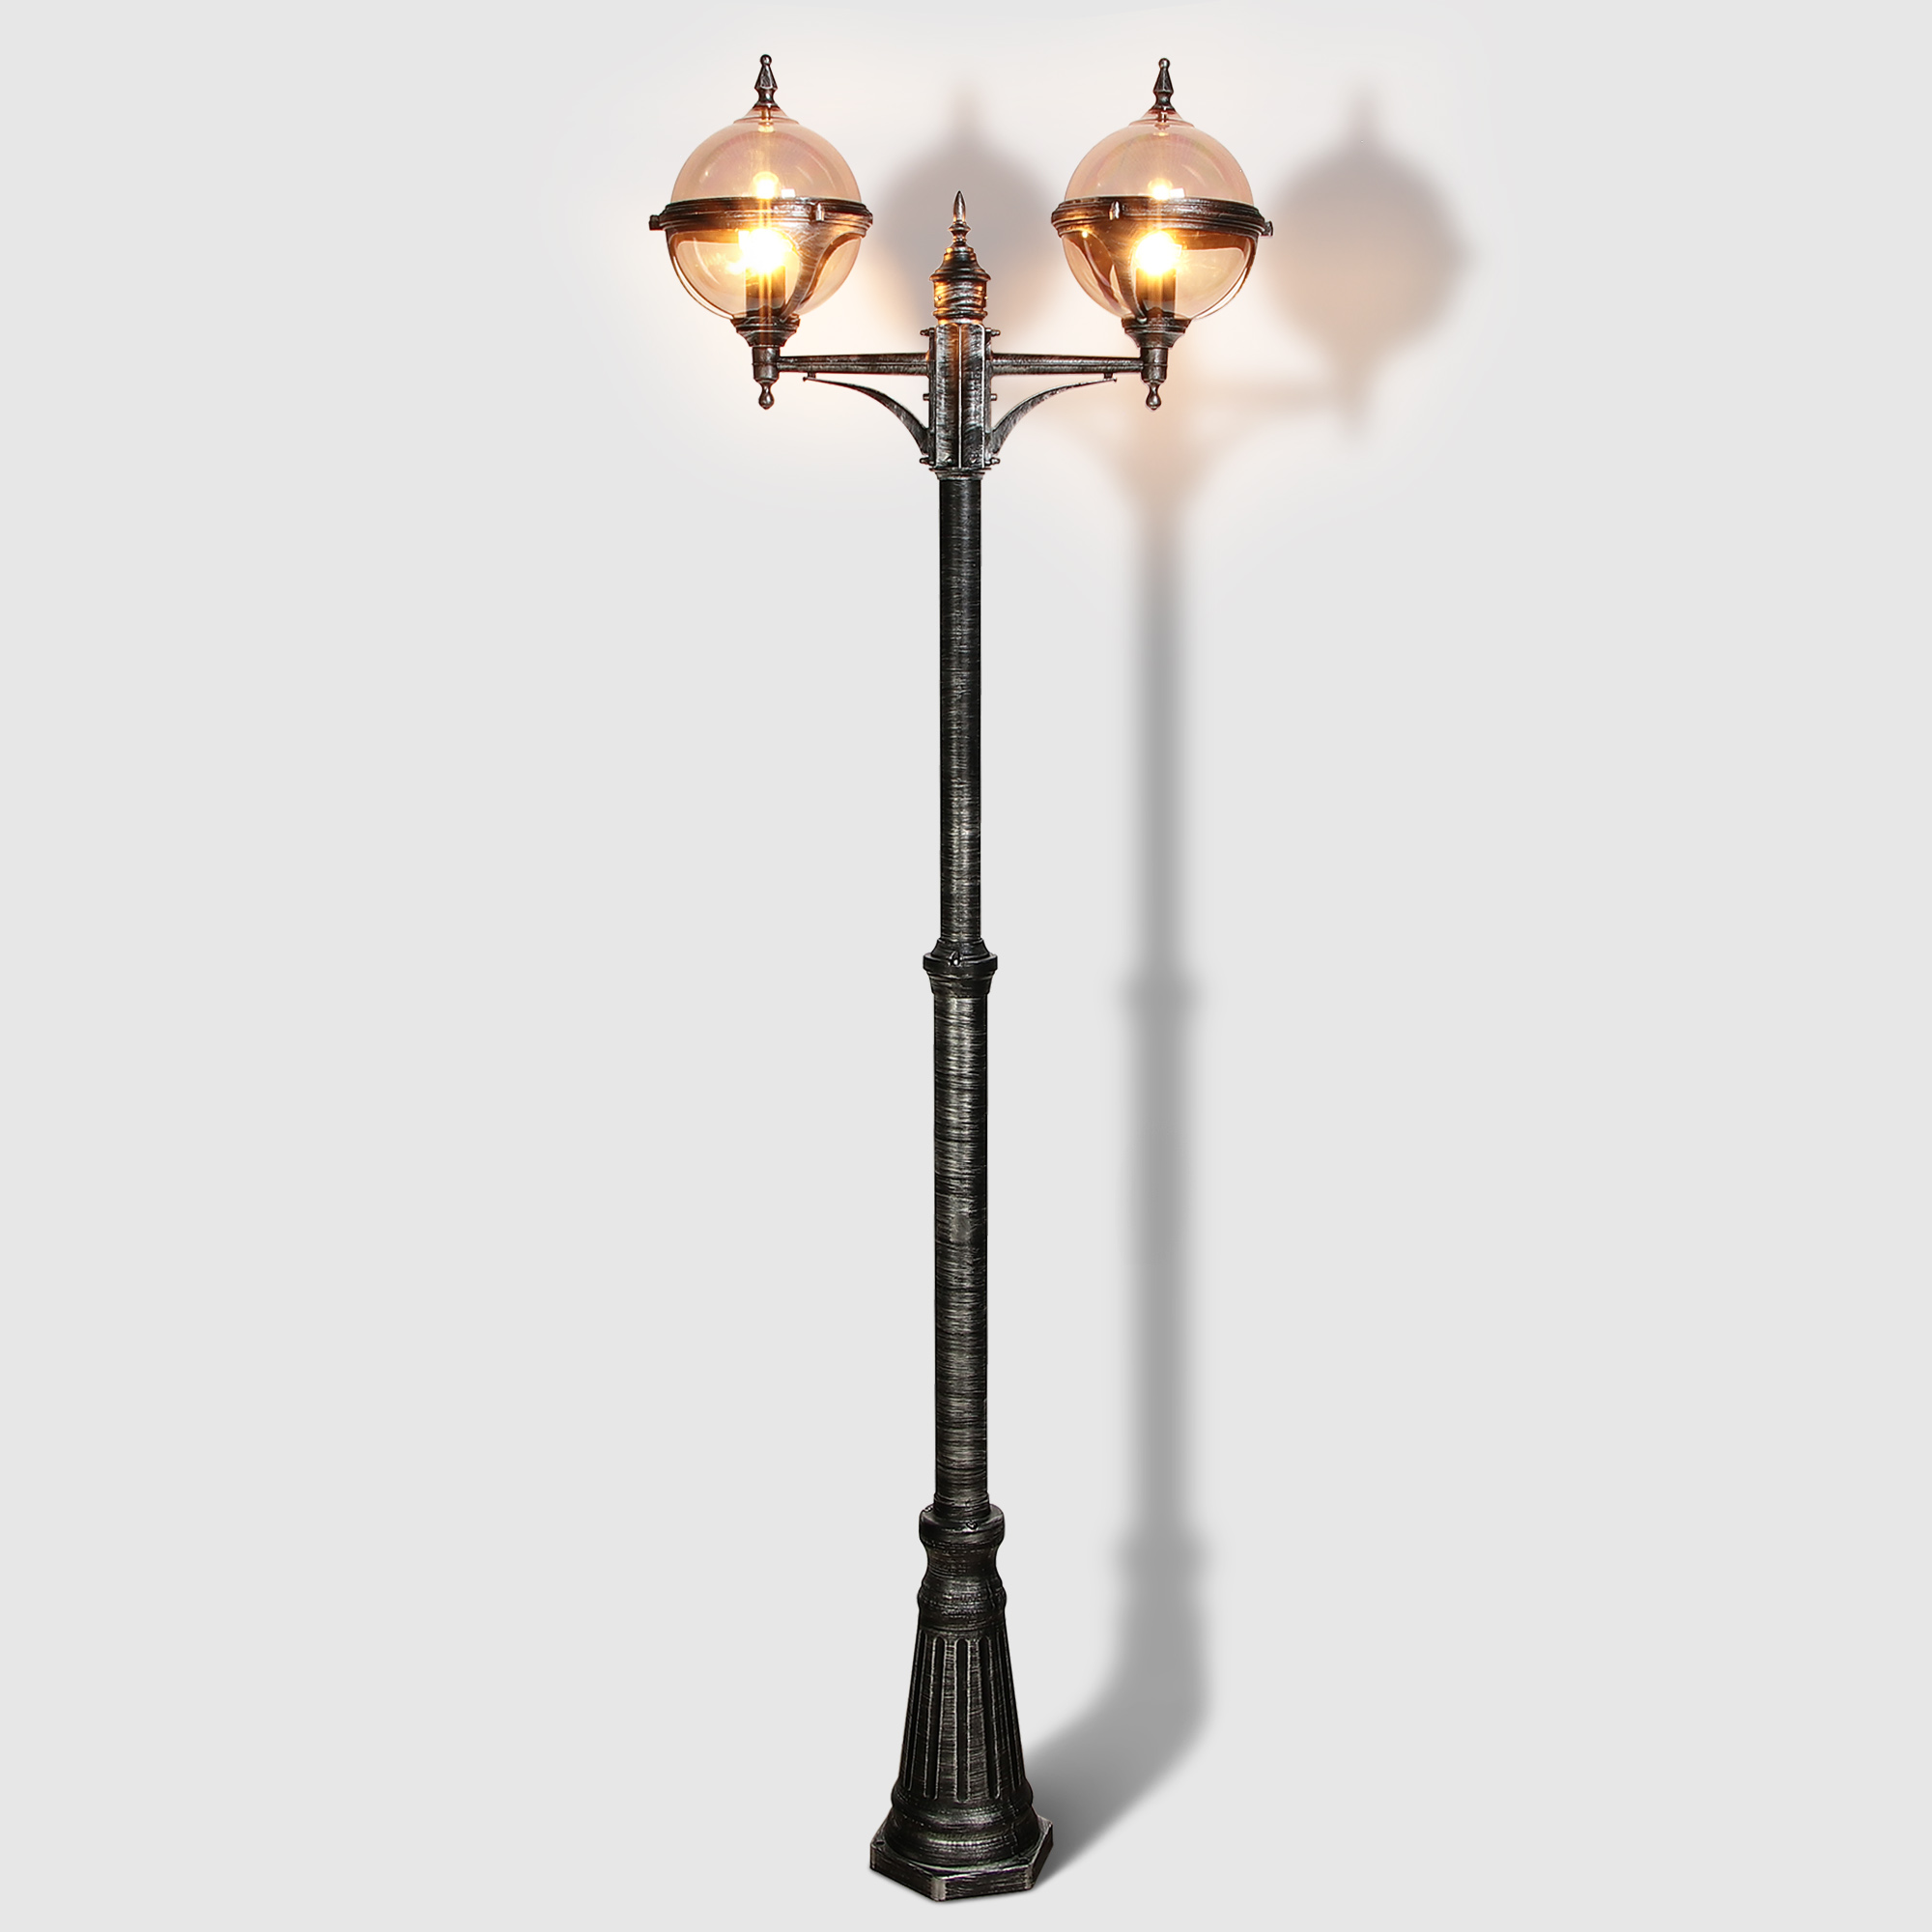 Светильник садовый Amber Lamp 9122B напольный IP44 E27 100Вт, черное серебро, цвет черное серебро, прозрачный - фото 2